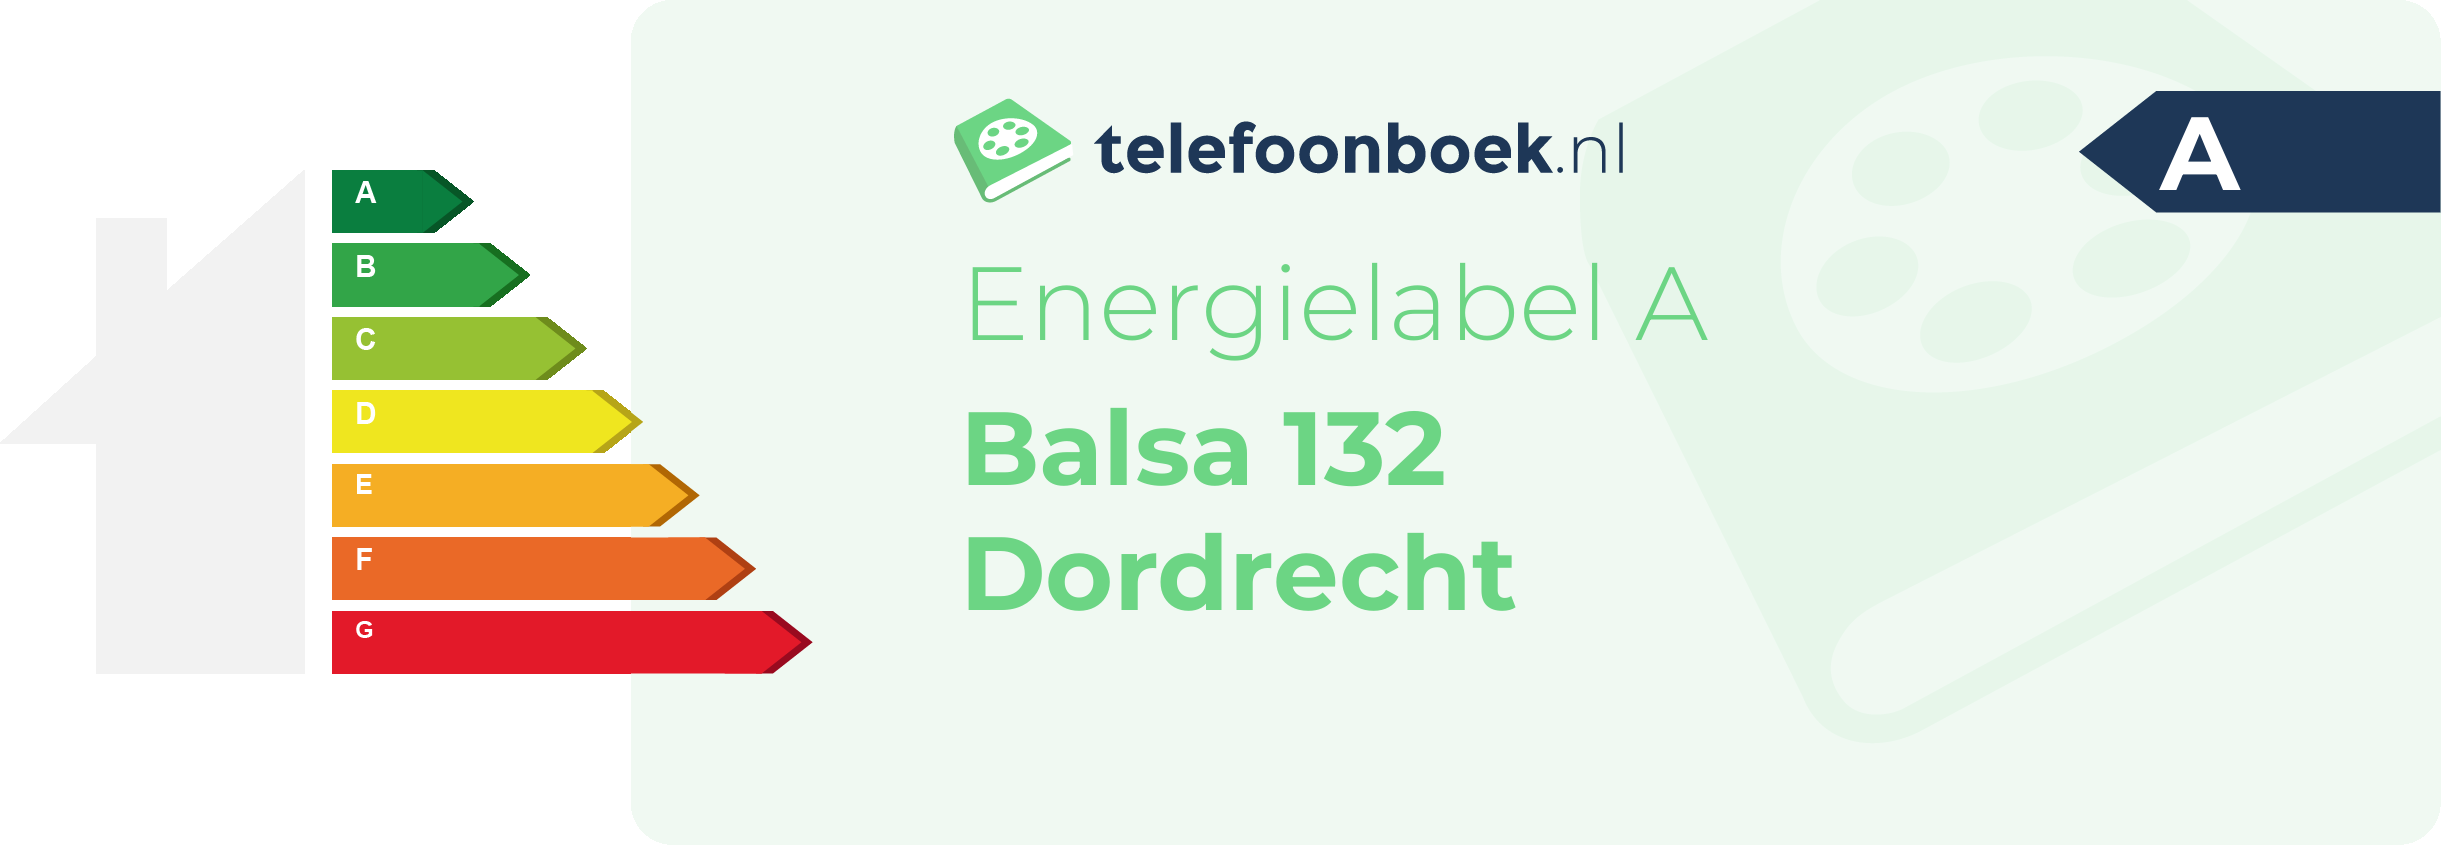 Energielabel Balsa 132 Dordrecht